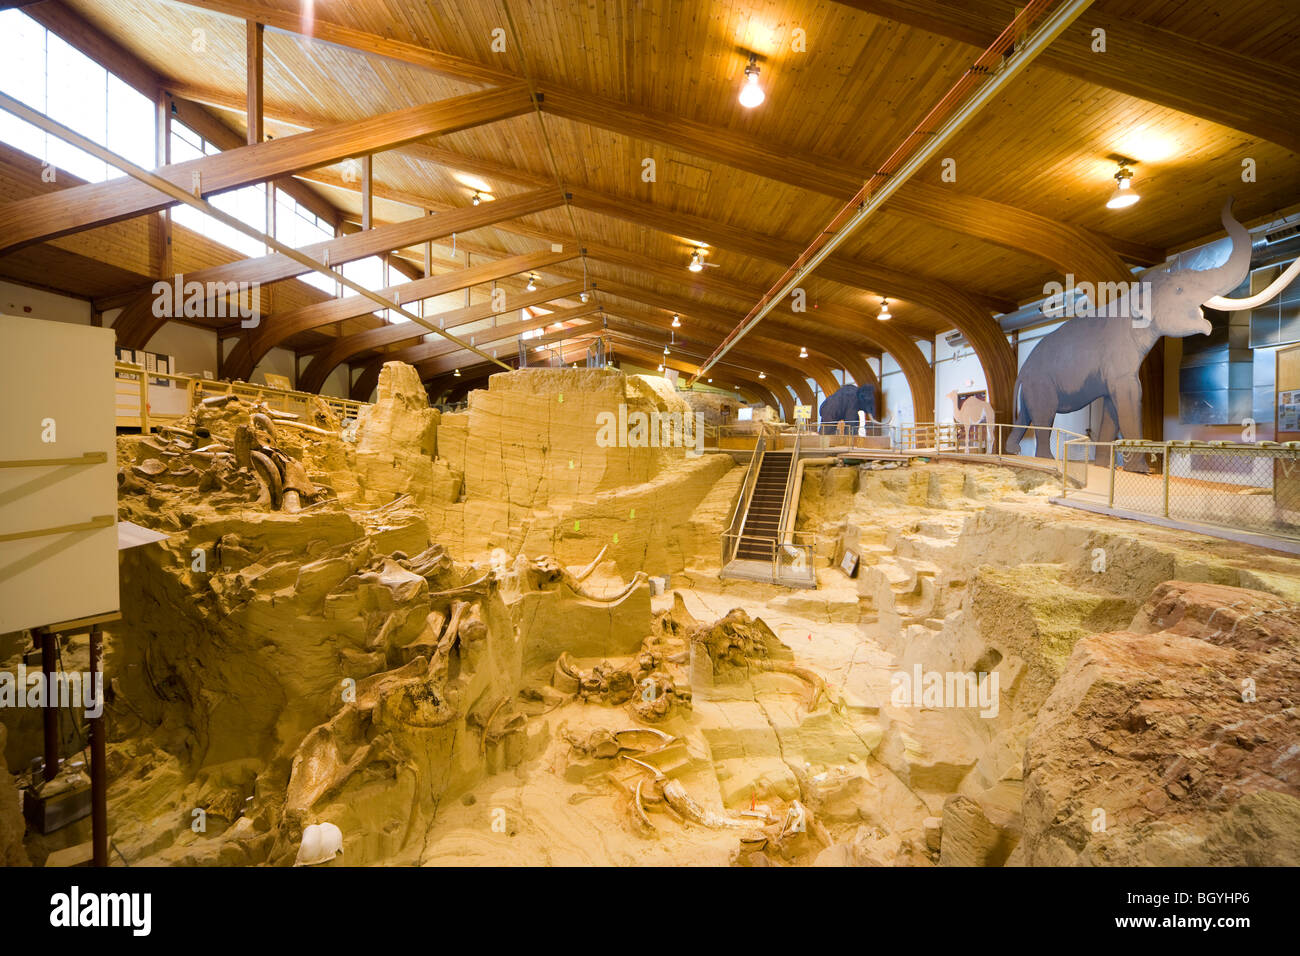 Das Mammut Website Museum, Hot Springs SD innere Ansicht von Fossil mit Mammutknochen Stoßzähne Fossilien in Paläontologie Graben. Stockfoto